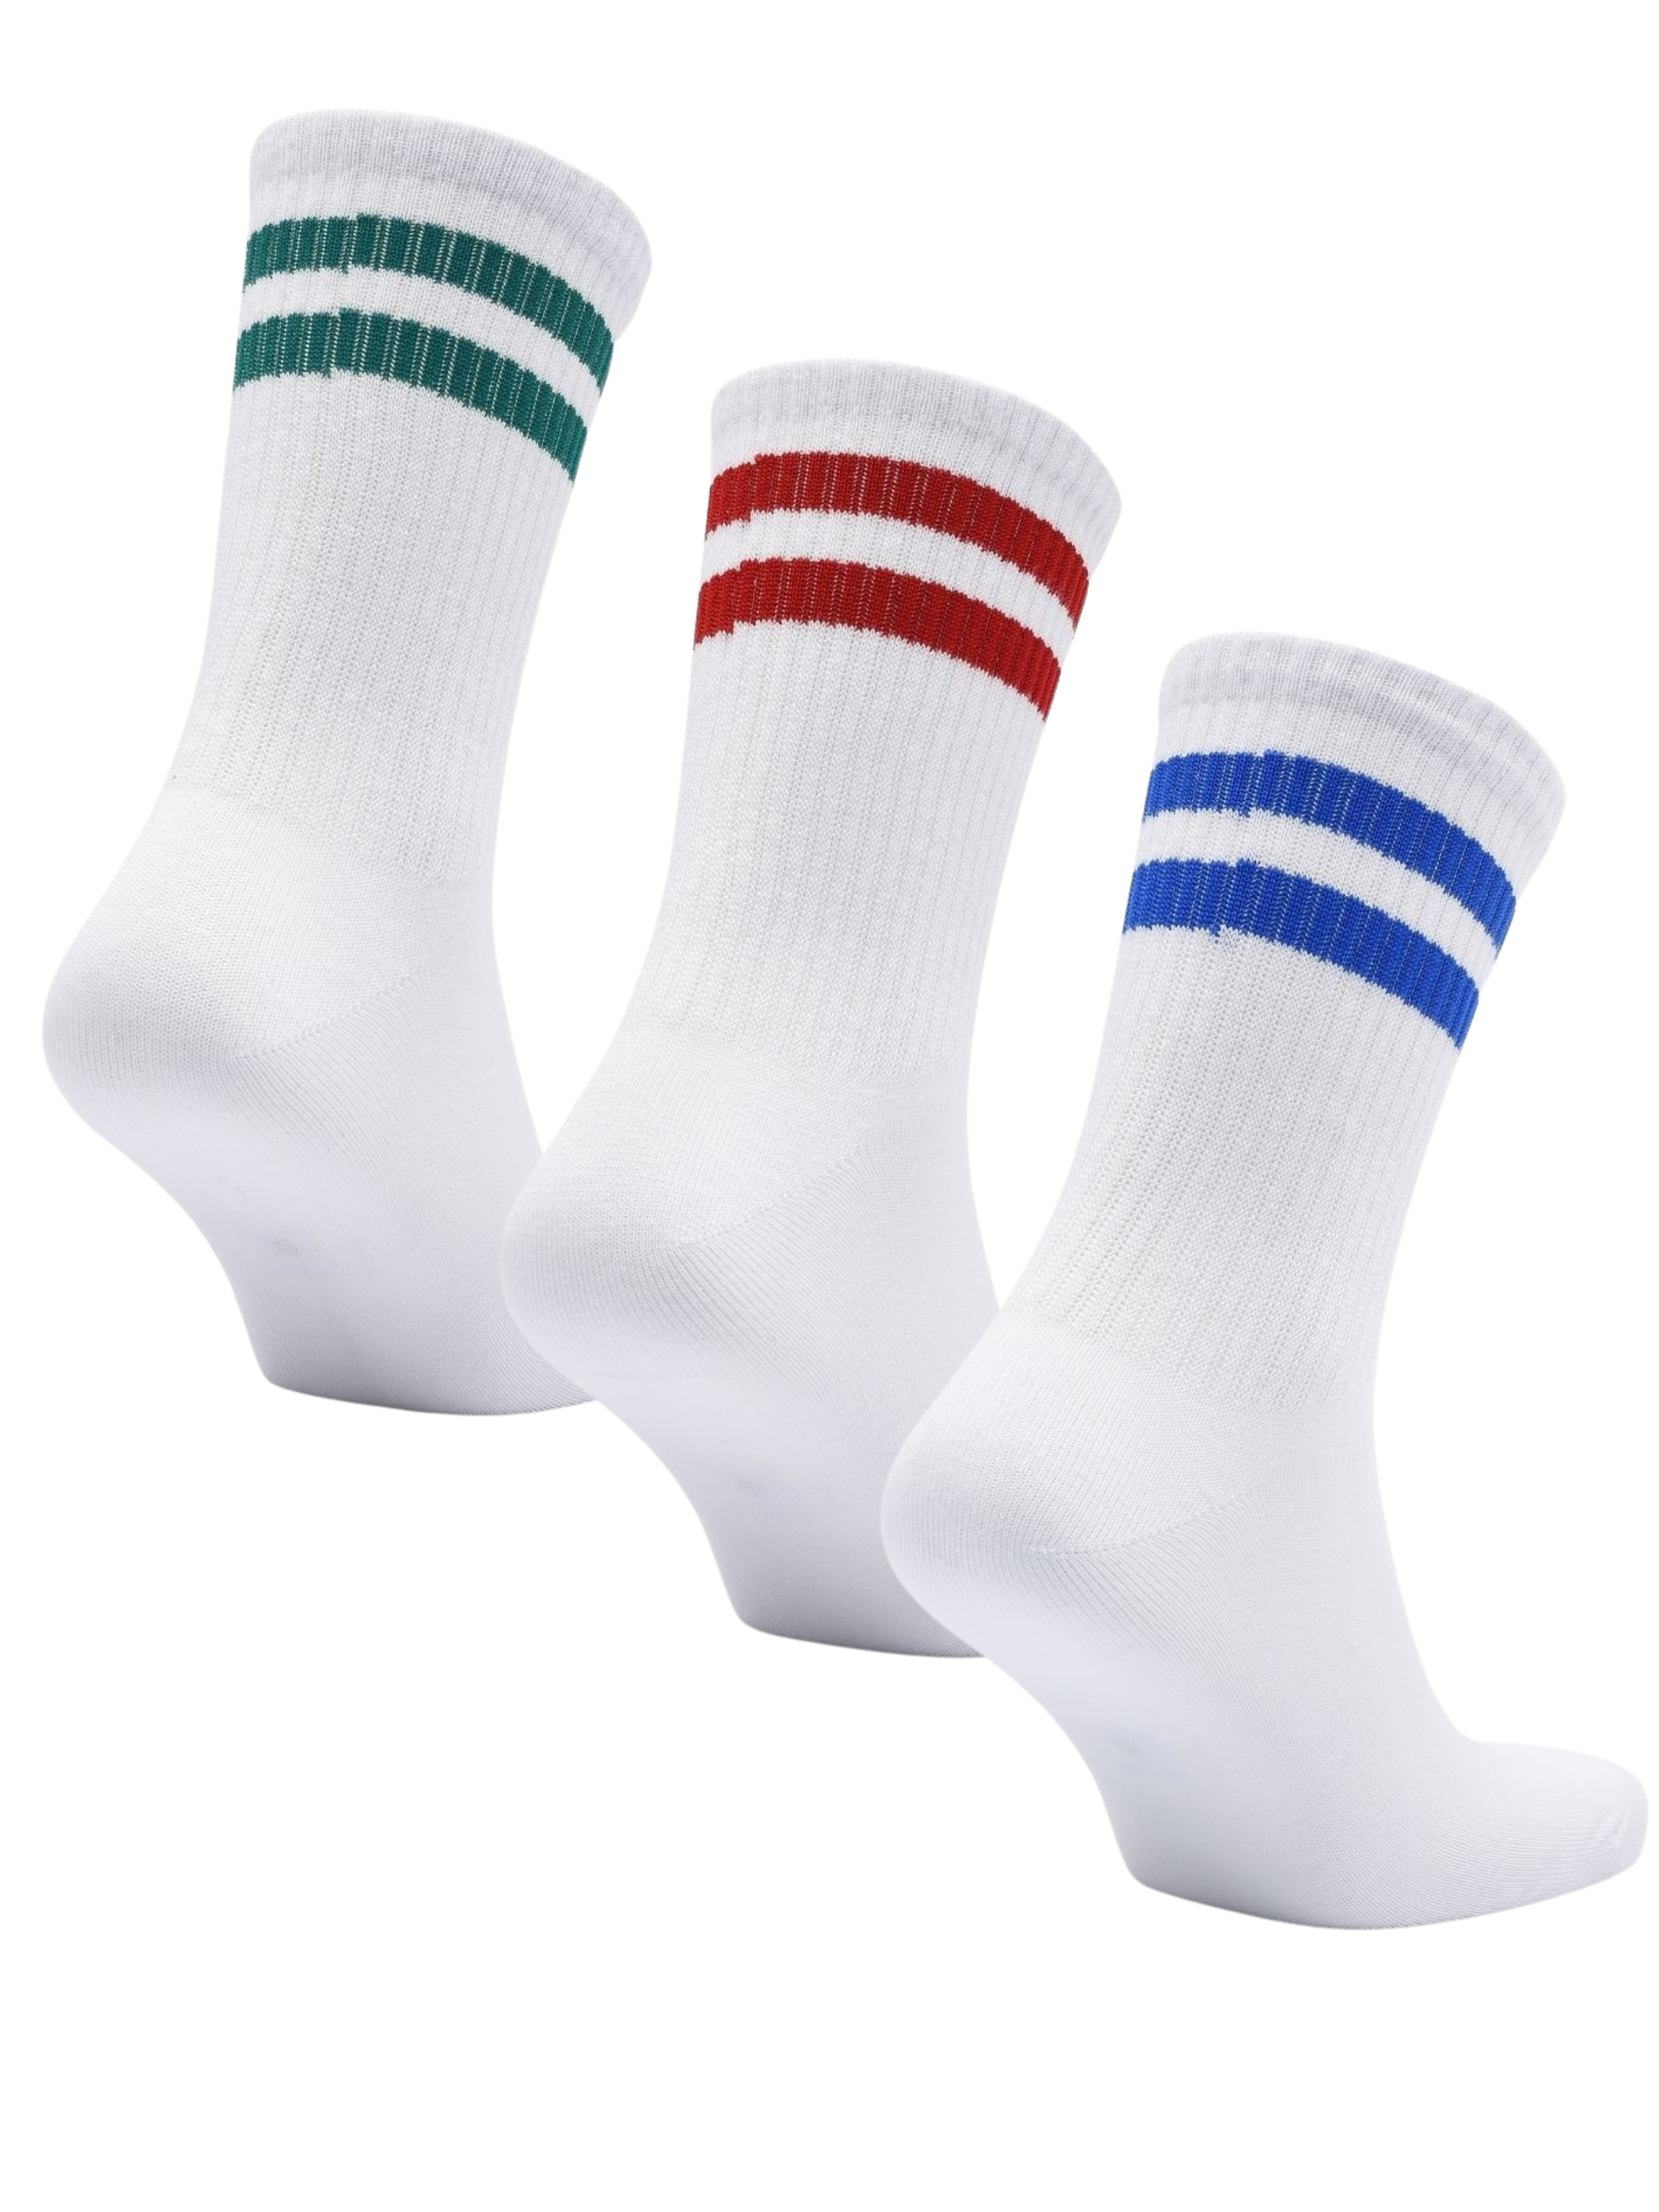 Набор Dzen and Smile носки для мужчин, васильковые, красные, зелёные, 43-45, 3 пары